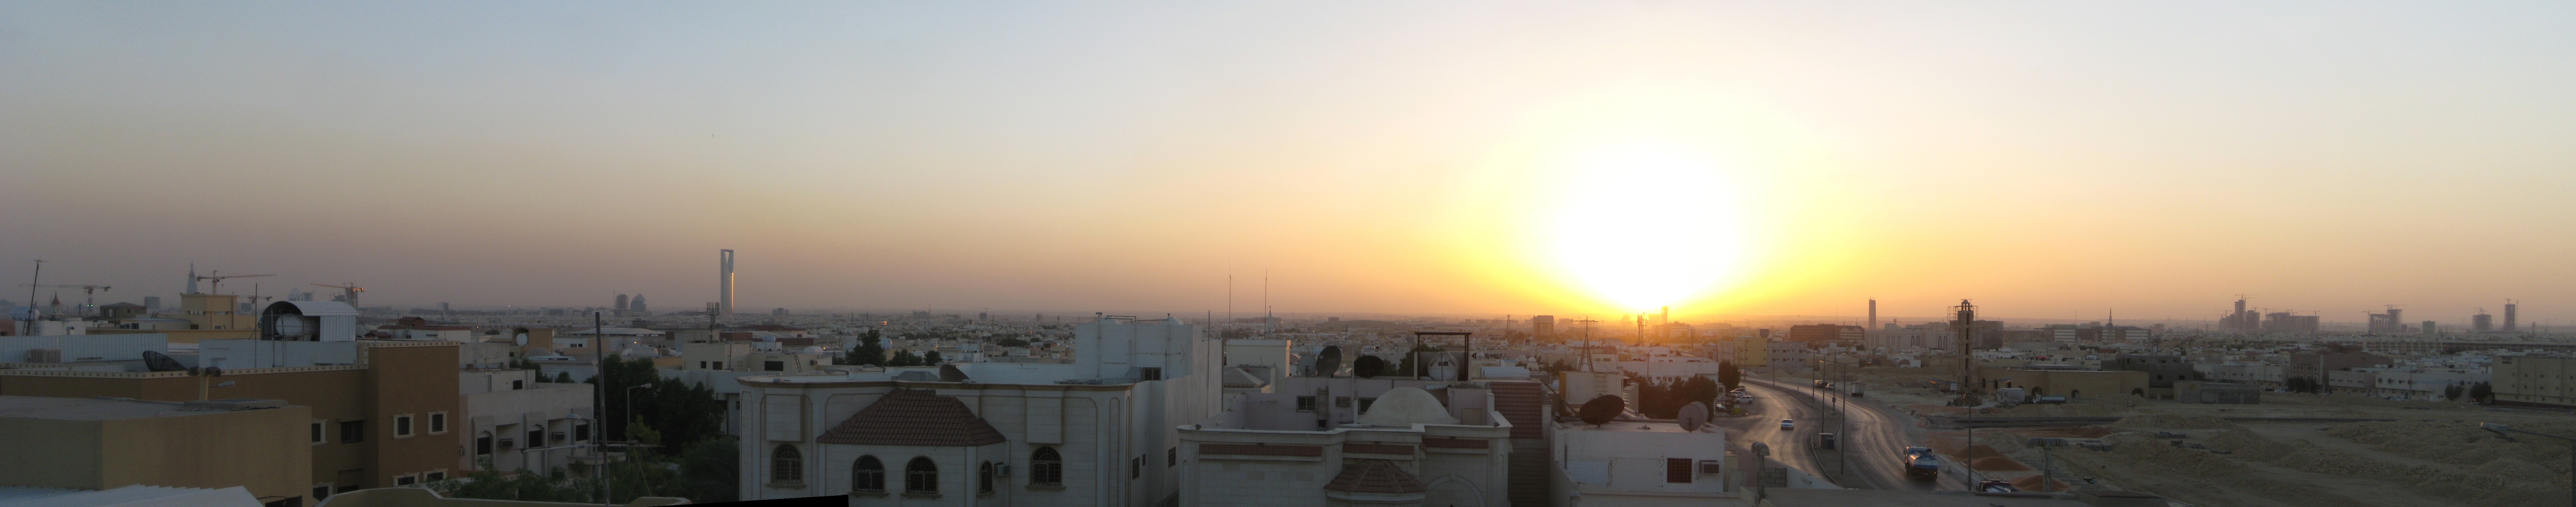 восход, города, панорама, Саудовская Аравия, мультиэкран, Рияд - обои на рабочий стол